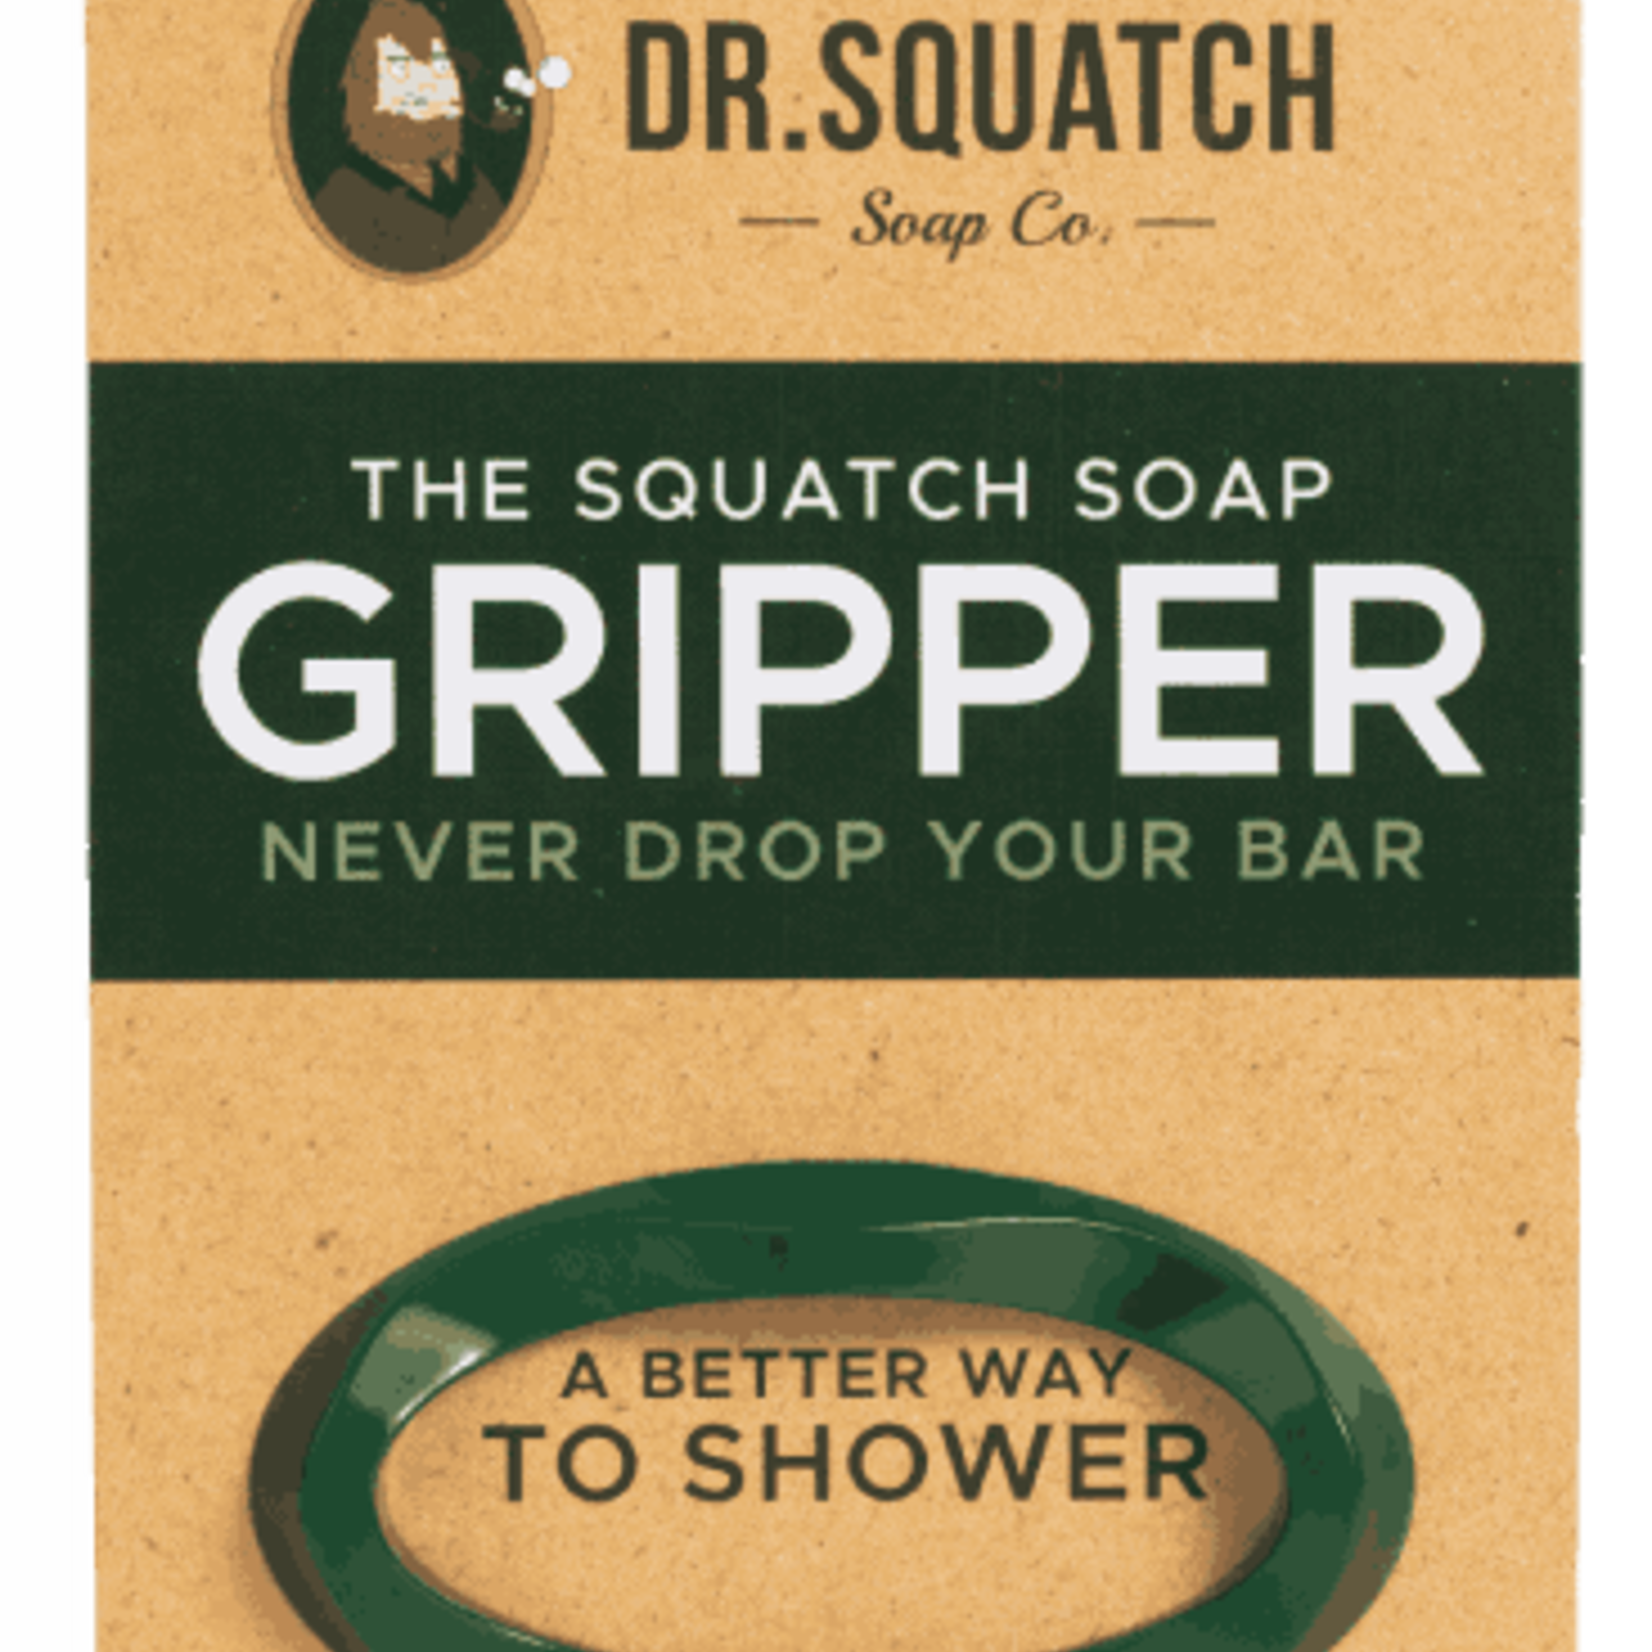 https://cdn.shoplightspeed.com/shops/621427/files/26998348/1652x1652x1/dr-squatch-dr-squatch-soap-gripper.jpg